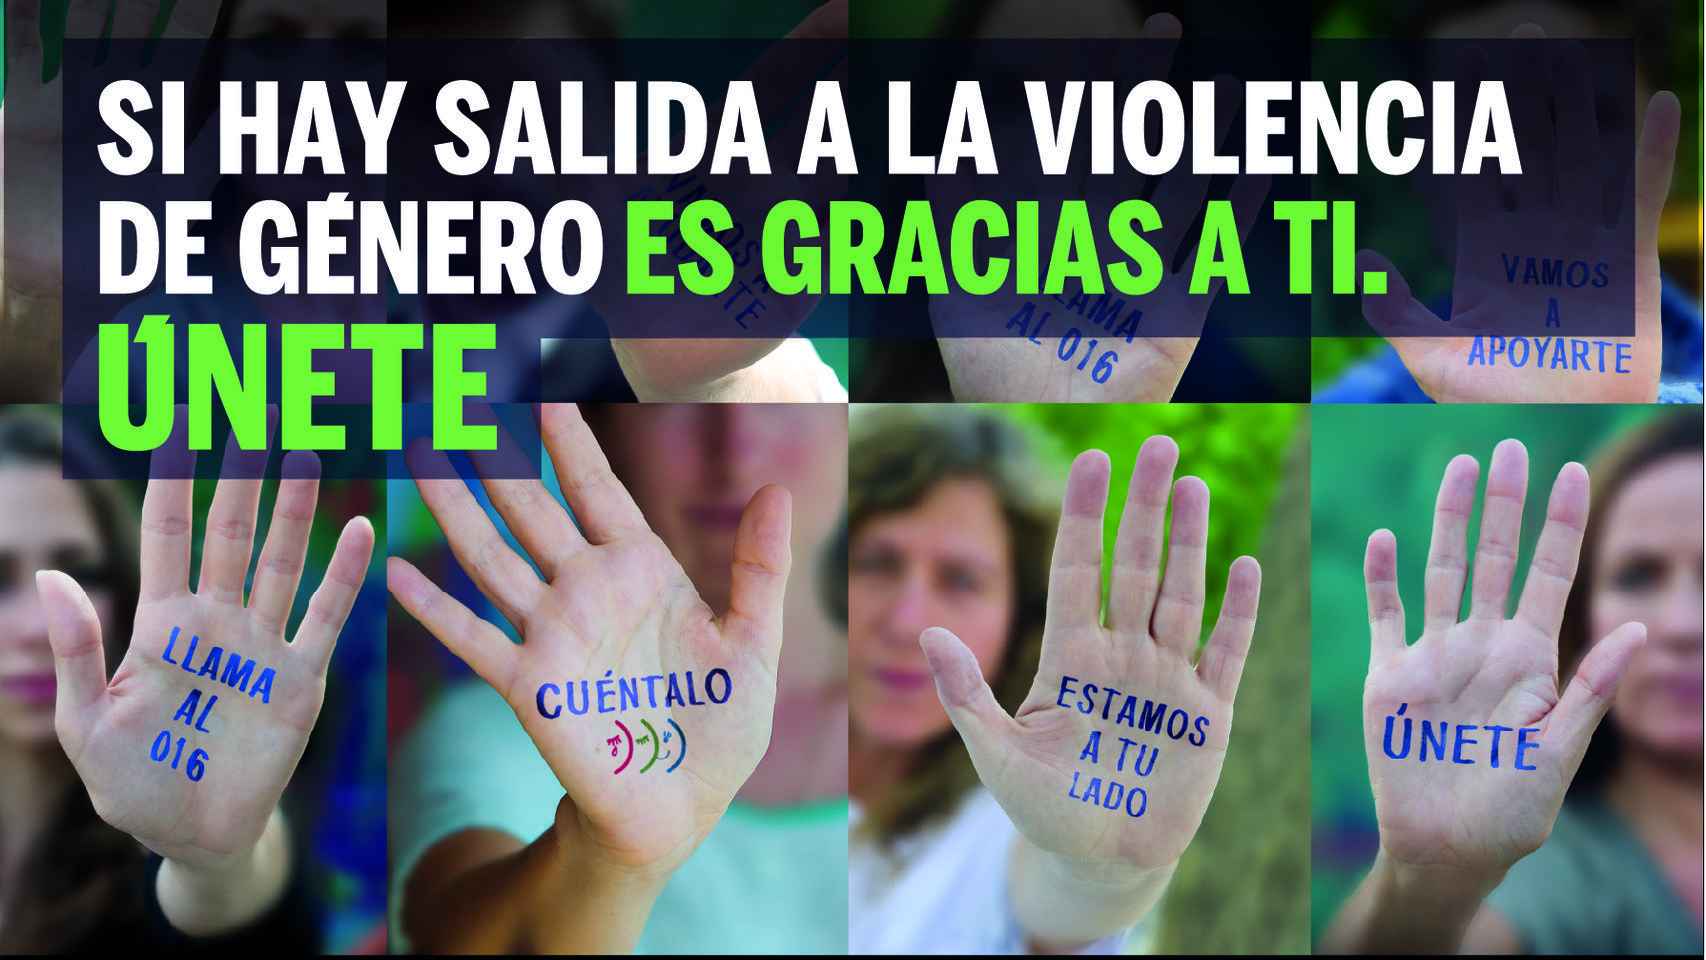 Cartel de la campaña contra la violencia de género.